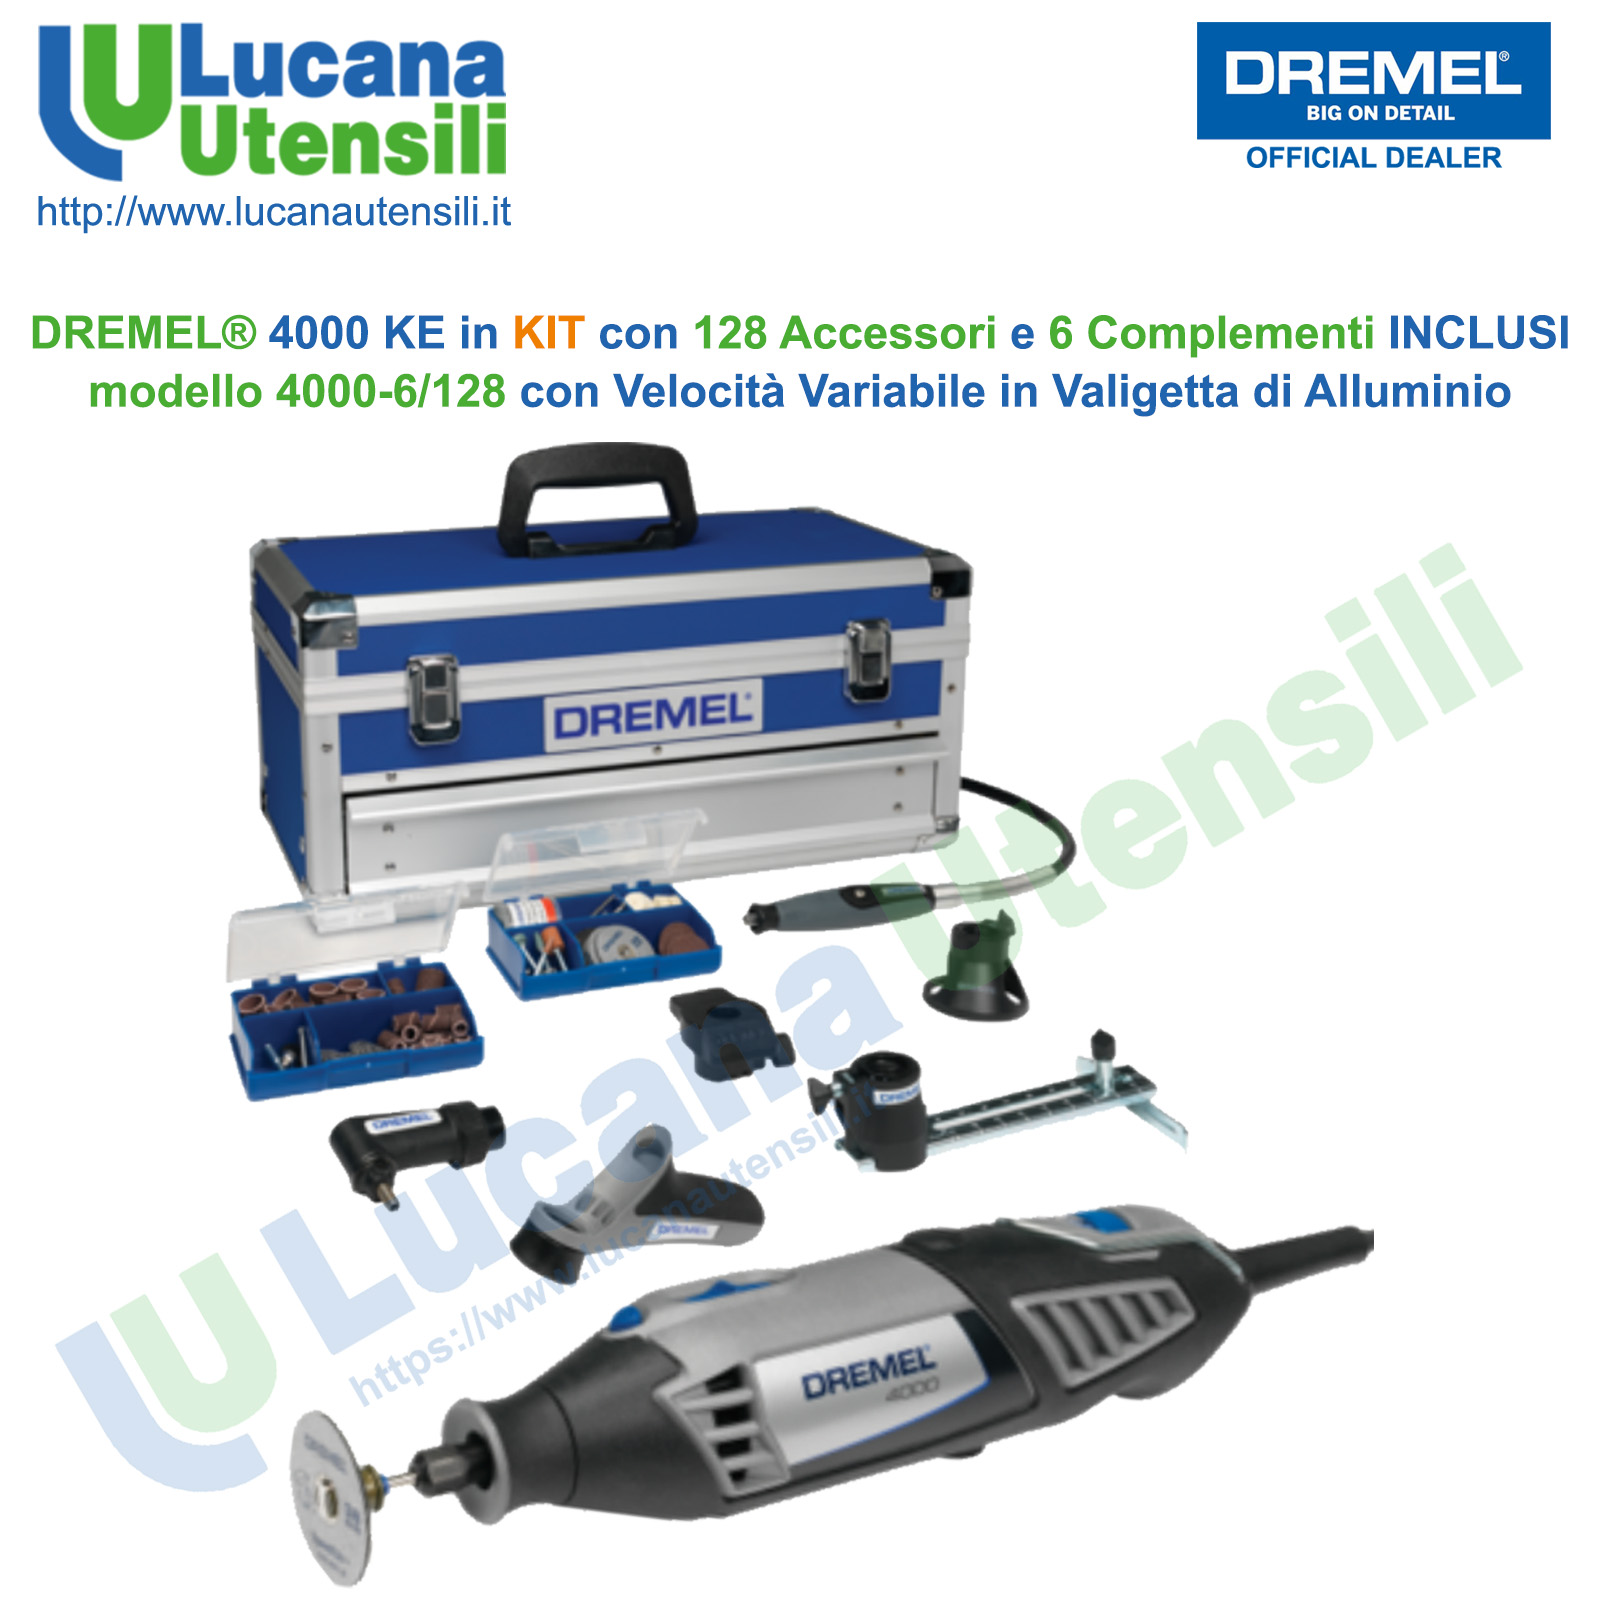 Dremel 4000-6/128 Multiutensile Edizione Platinum 175 Watt 6 Complementi 128 Accessori 230 V